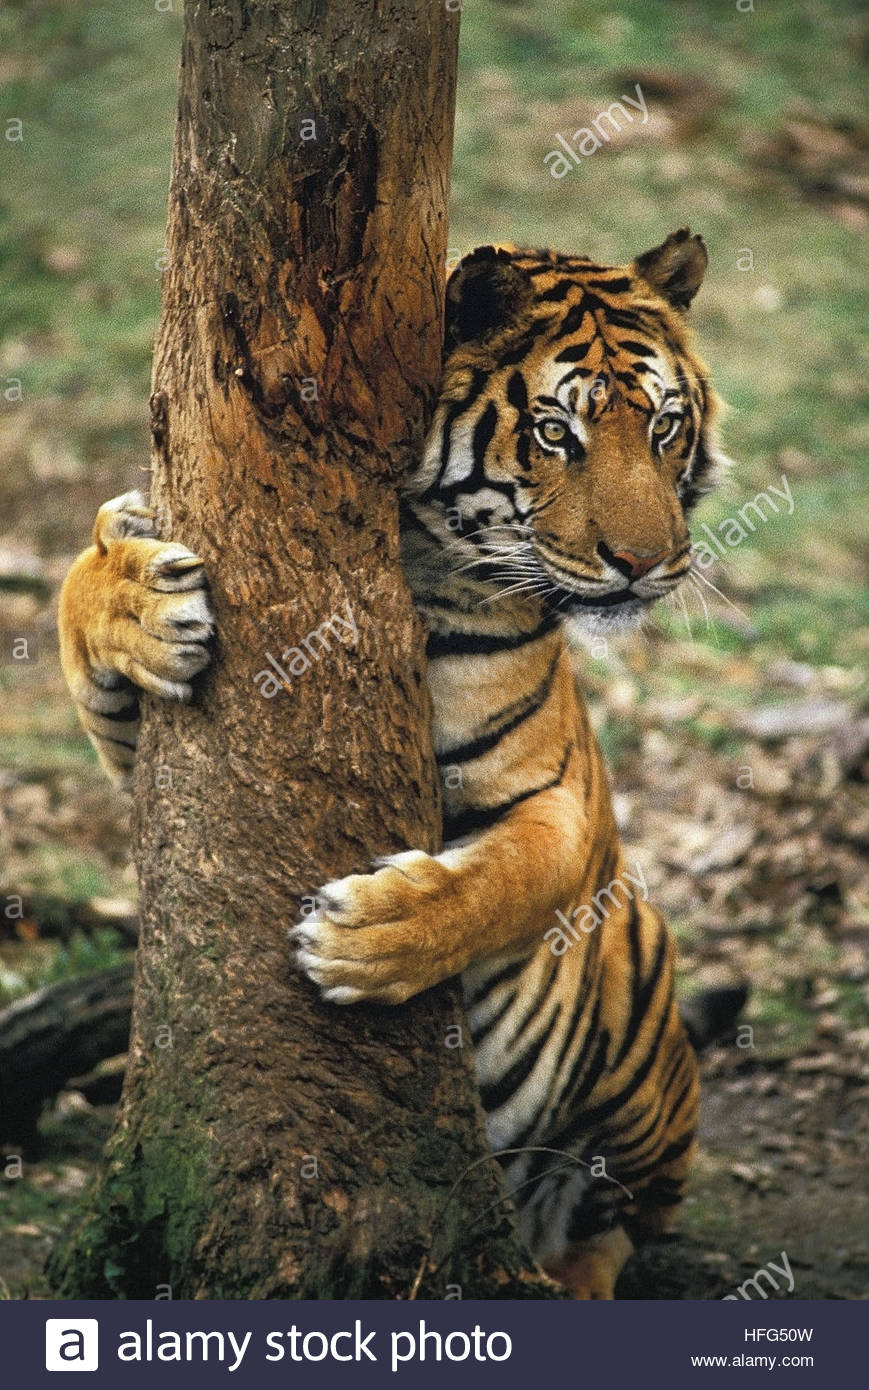 TigerClimbing02.jpg